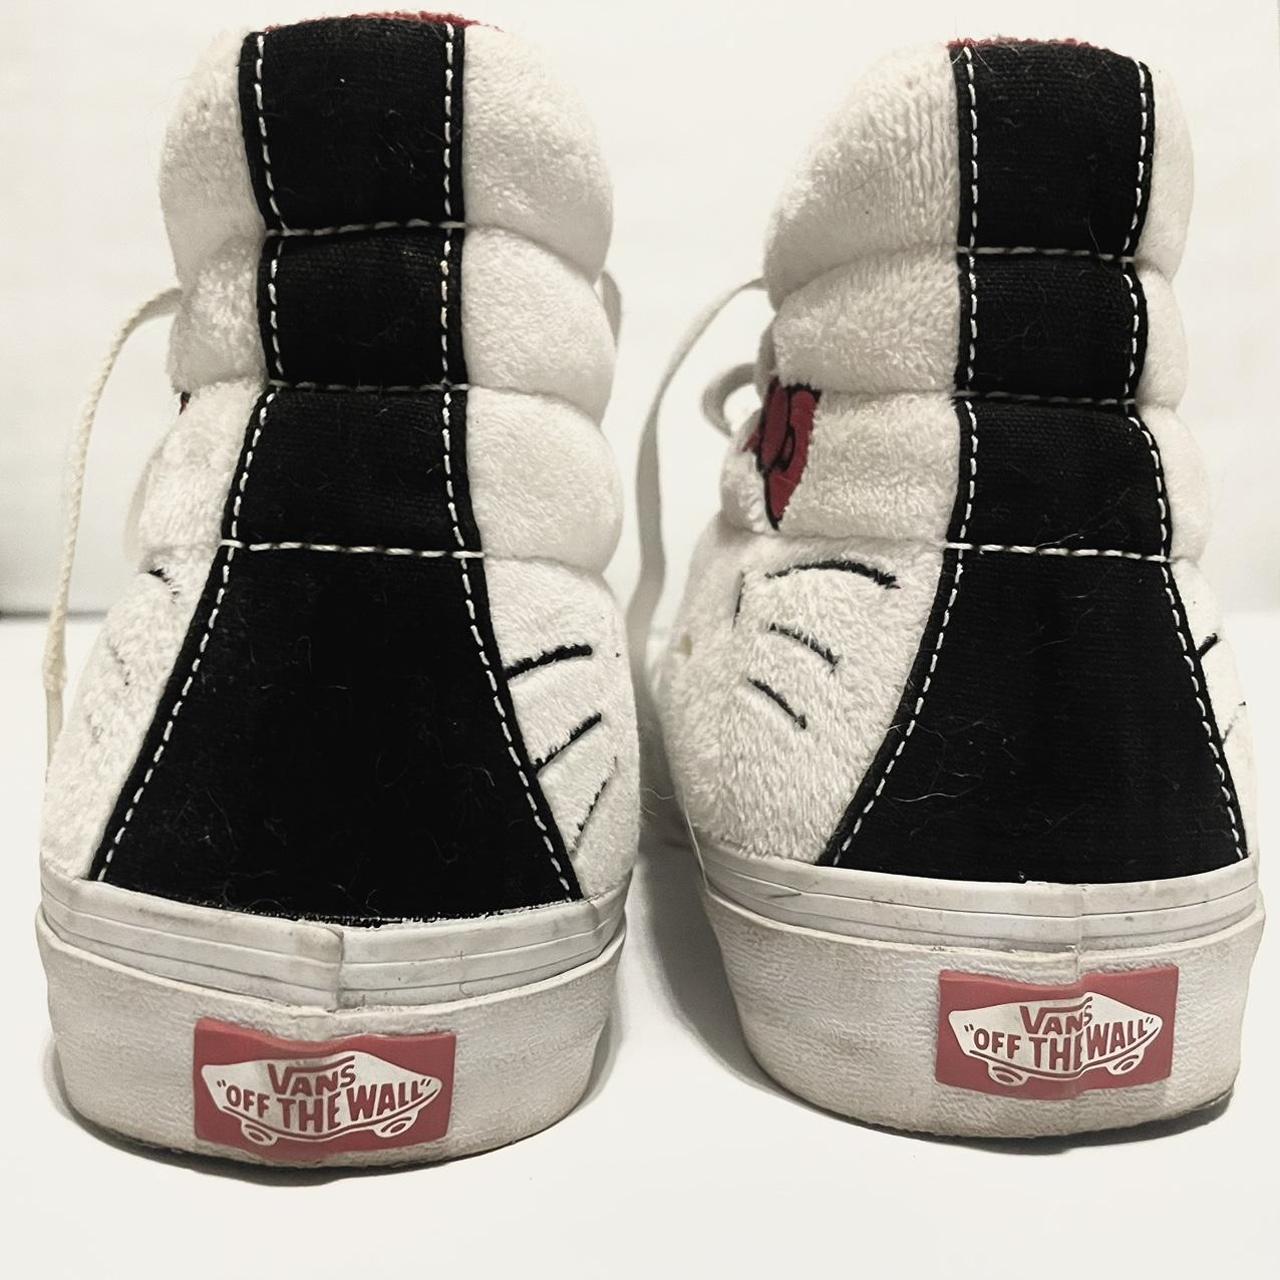 Vans SK8-Hi Slim Hello Kitty High Tops Shoes Men’s... - Depop